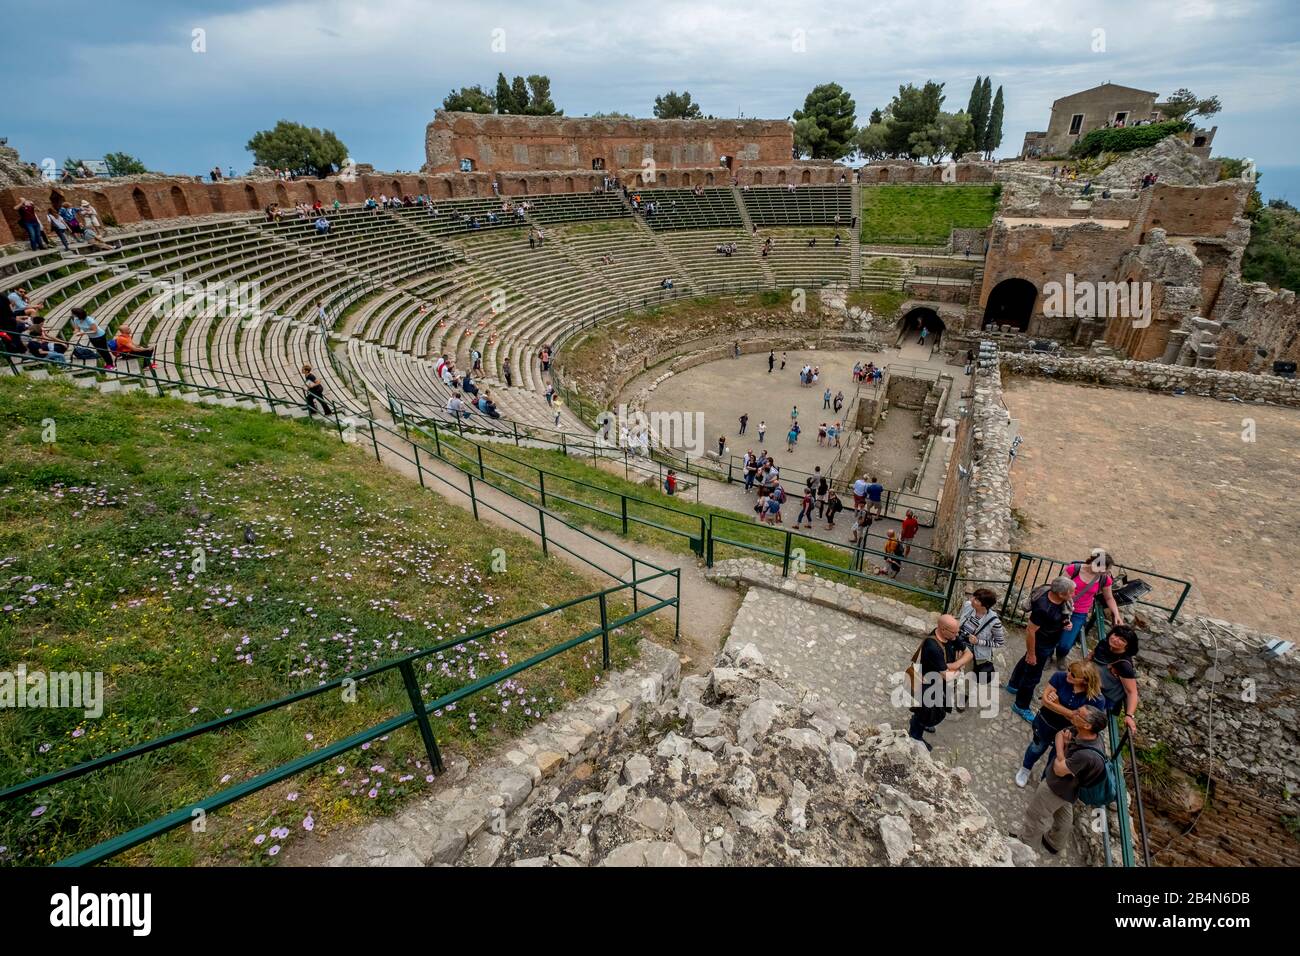 Teatro Antico di Taormina, amphithéâtre, ruine de l'ancien théâtre Taormina, Taormine, Italie du sud, Europe, Sicile, Italie Banque D'Images